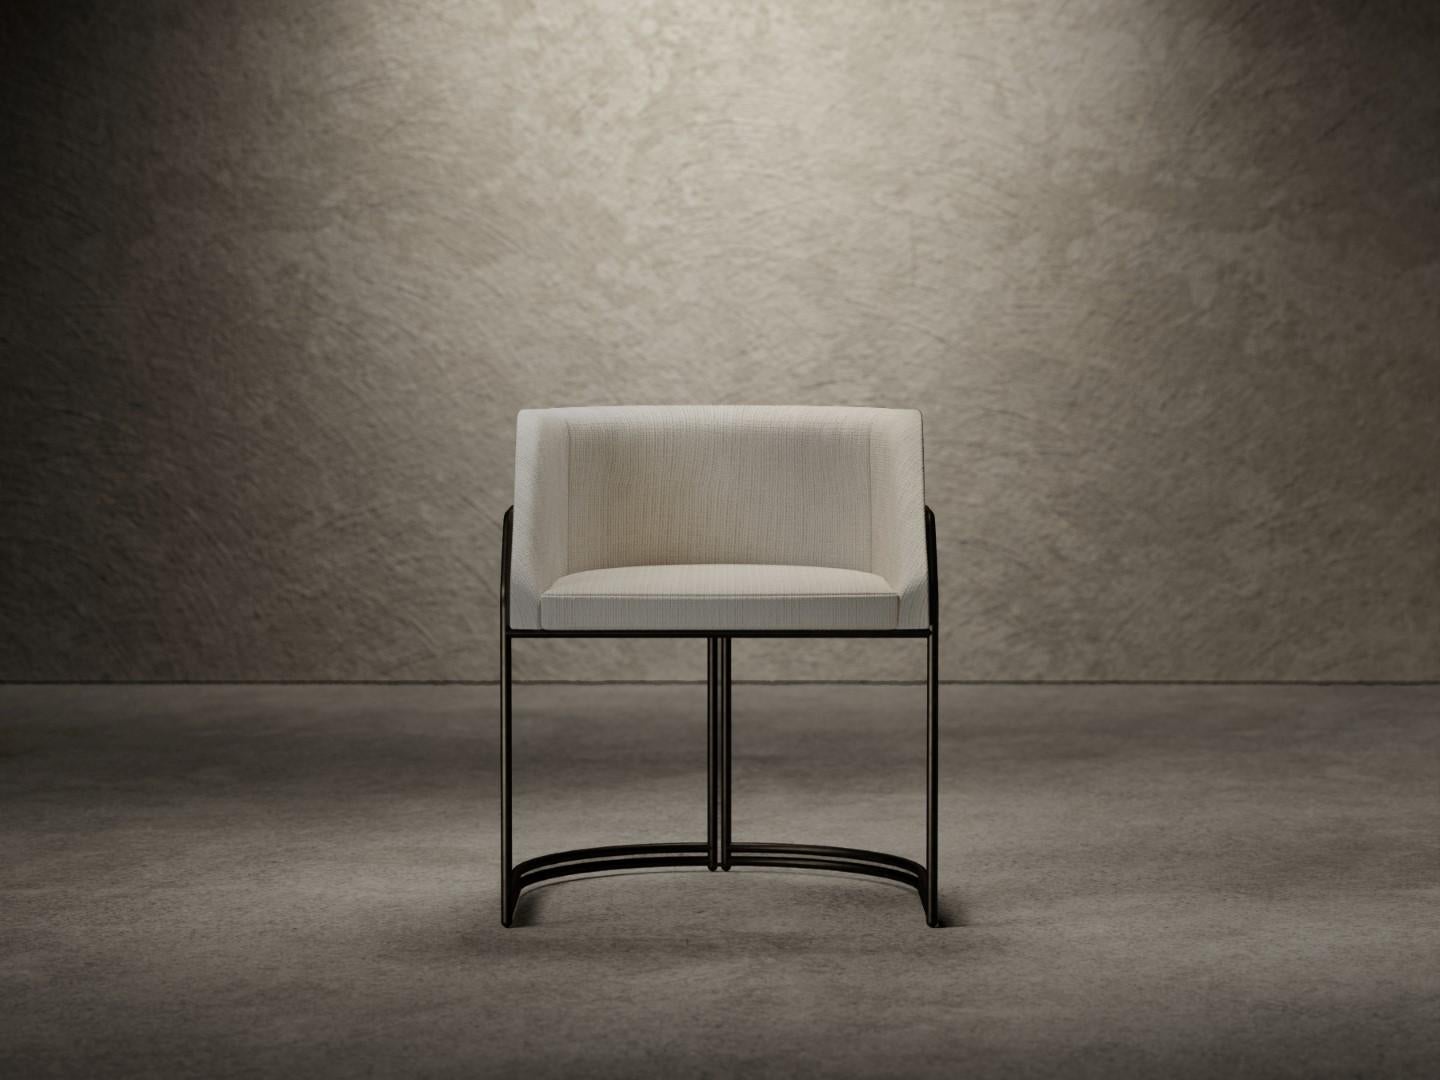 Der Stuhl Déjà Vu besteht aus einer Holzschale, die mit Polyurethanschaum unterschiedlicher Dichte gepolstert und mit einer oberen Schicht aus Acrylfaser versehen ist. 
Der Sitz ist komplett mit Stoff oder Leder bezogen, während das Gestell in den